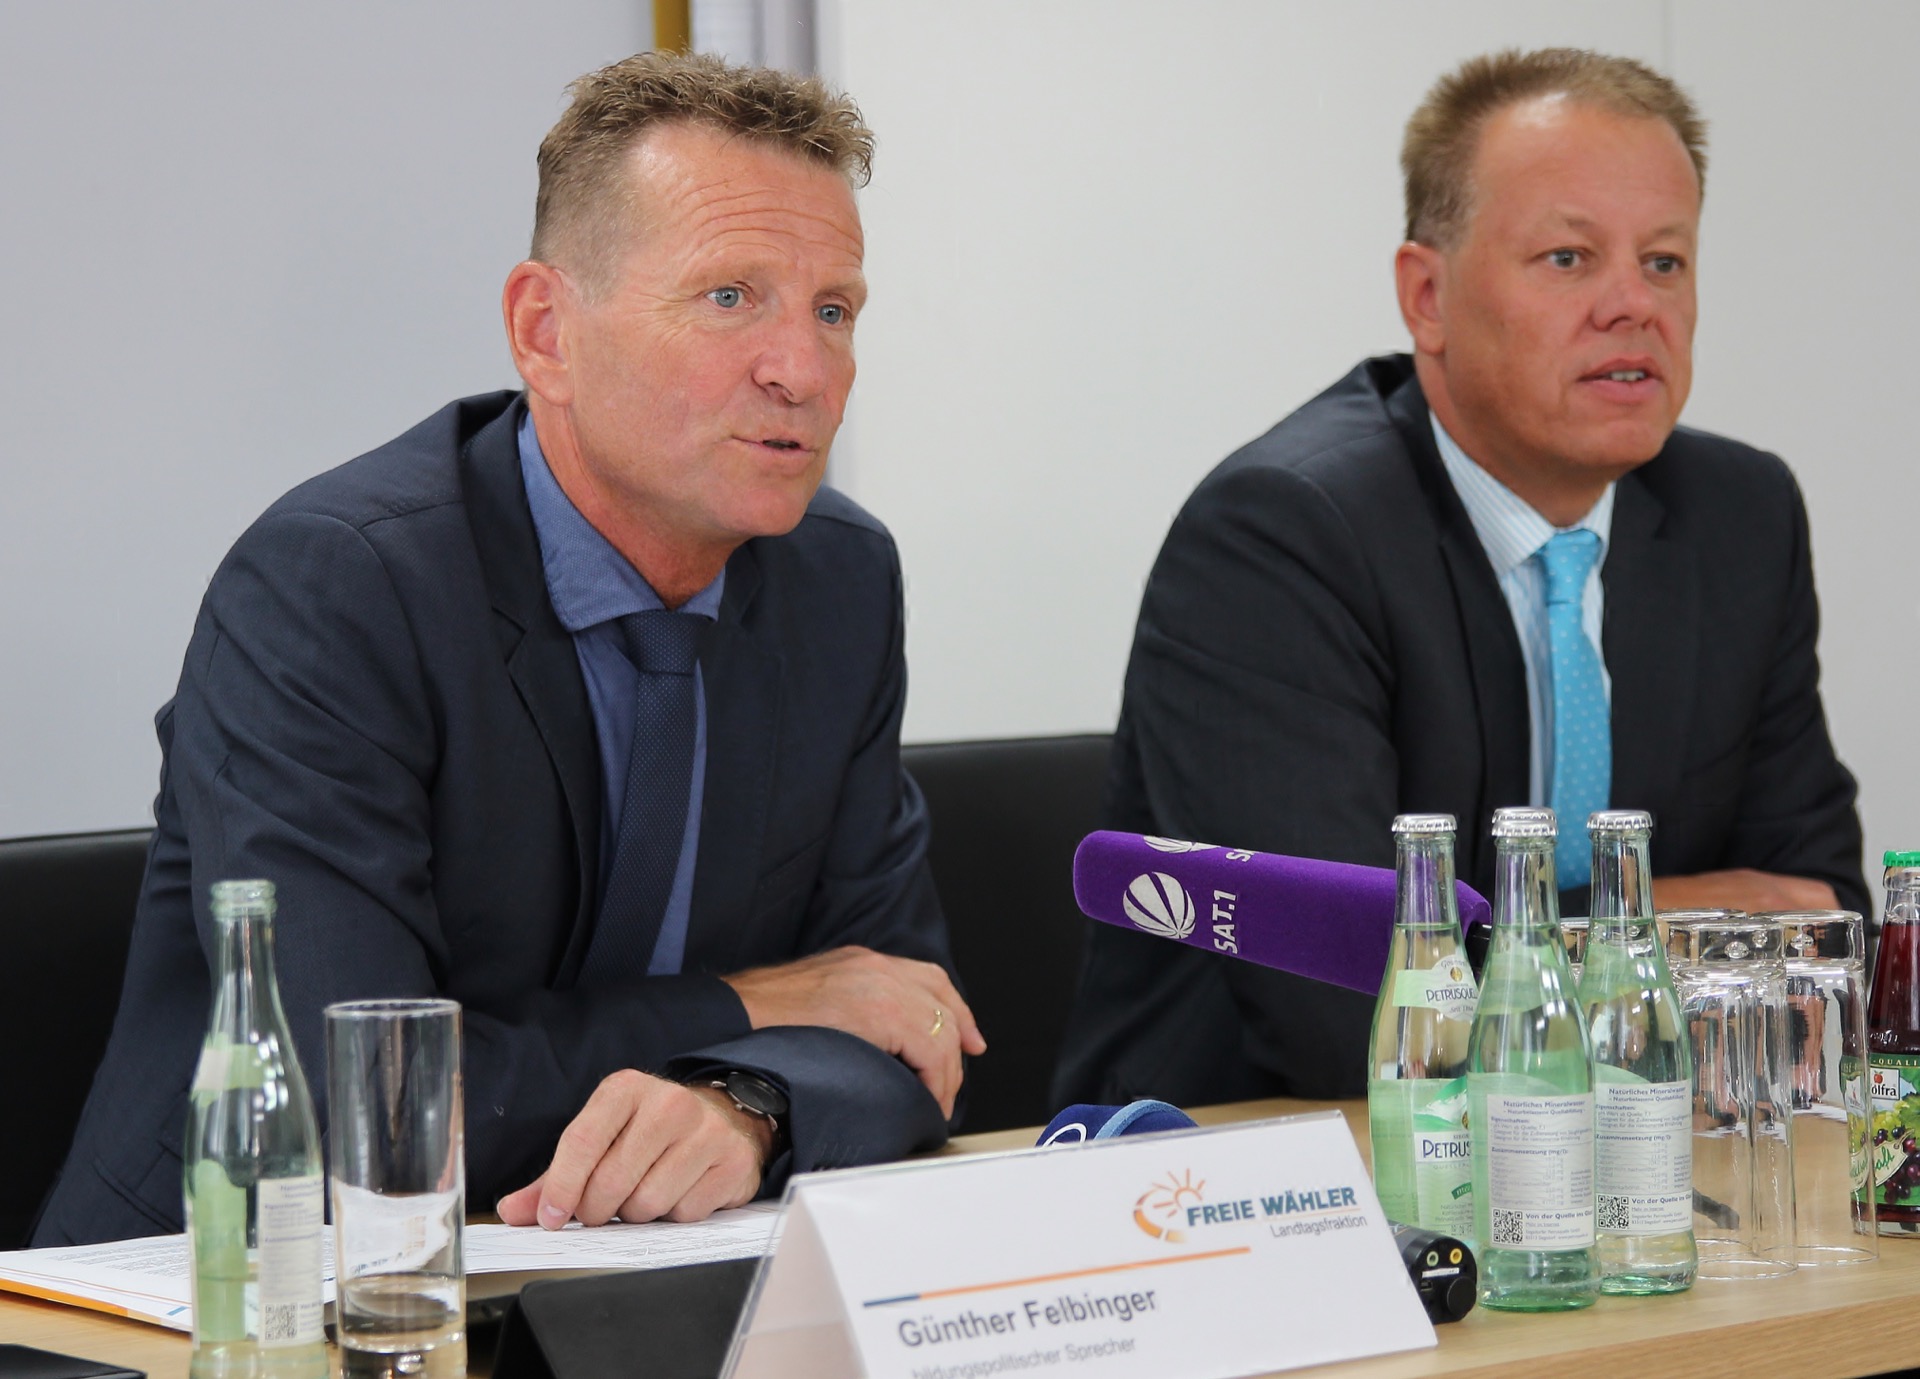 Das Foto zeigt Günther Felbinger (links im Bild), bildungspolitischer Sprecher der FREIE WÄHLER Landtagsfraktion und Dirk Oberjasper, Leiter der Pressestelle.